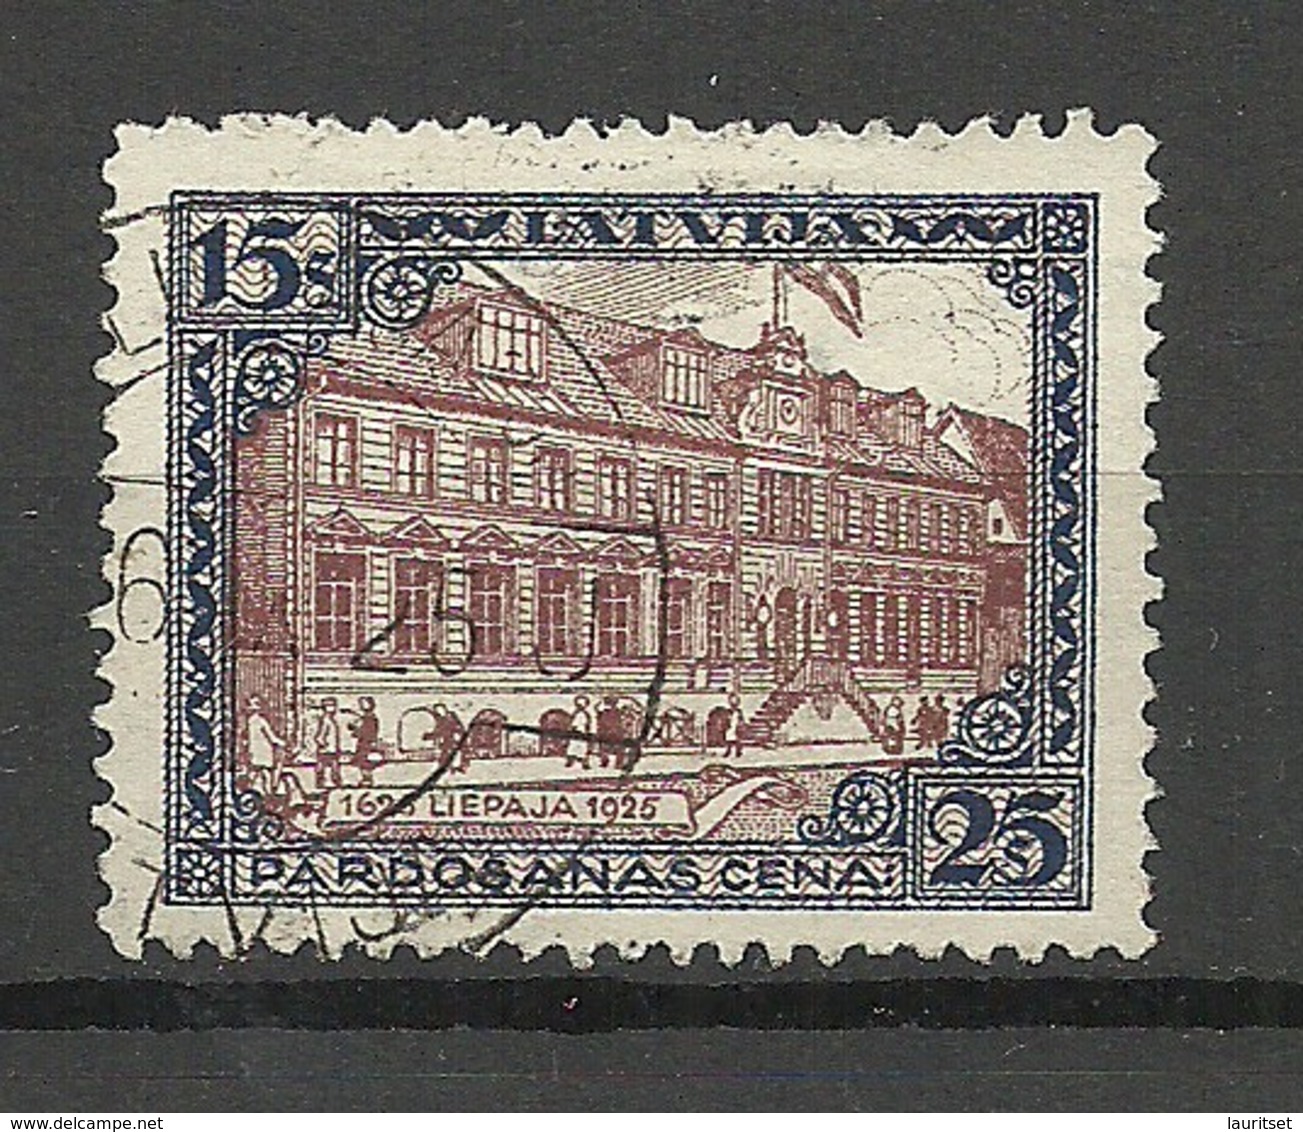 LETTLAND Latvia 1925 Michel 108 A O Liepaja - Lettonia